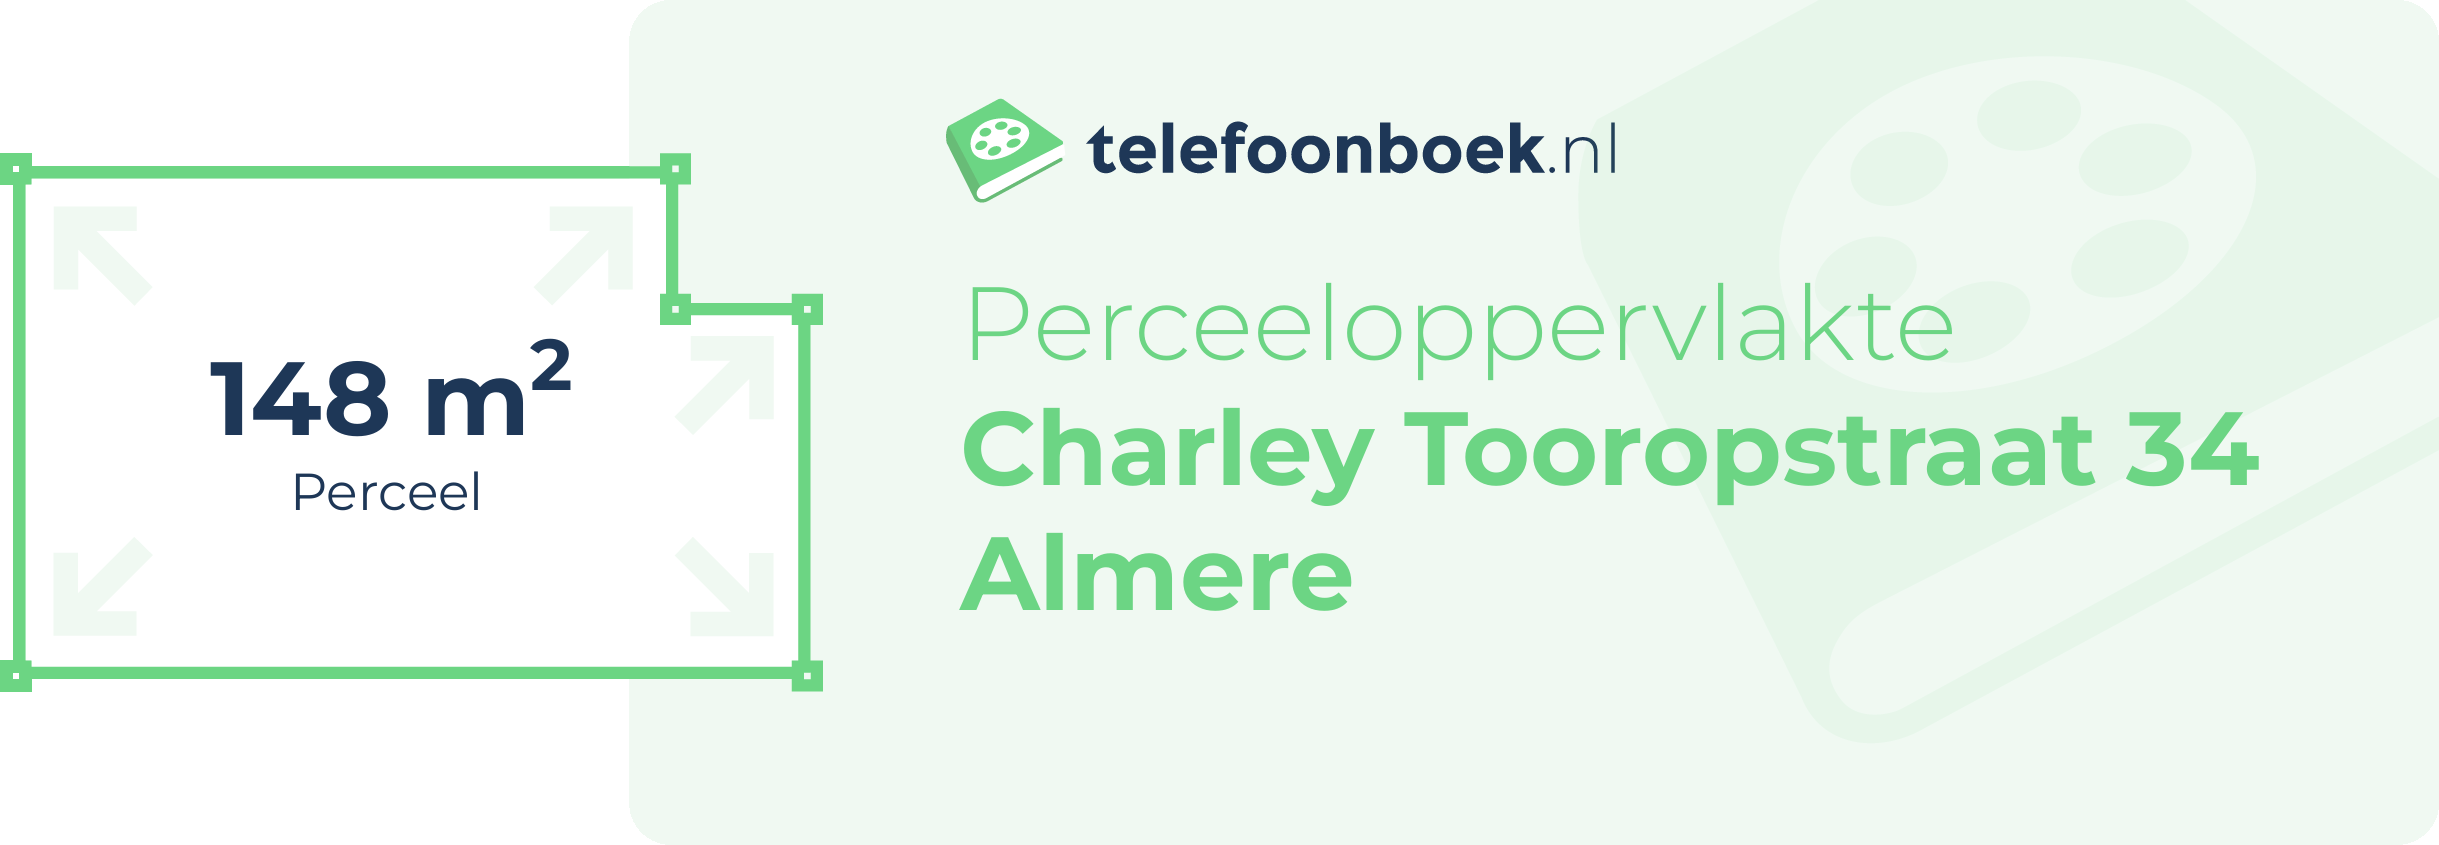 Perceeloppervlakte Charley Tooropstraat 34 Almere